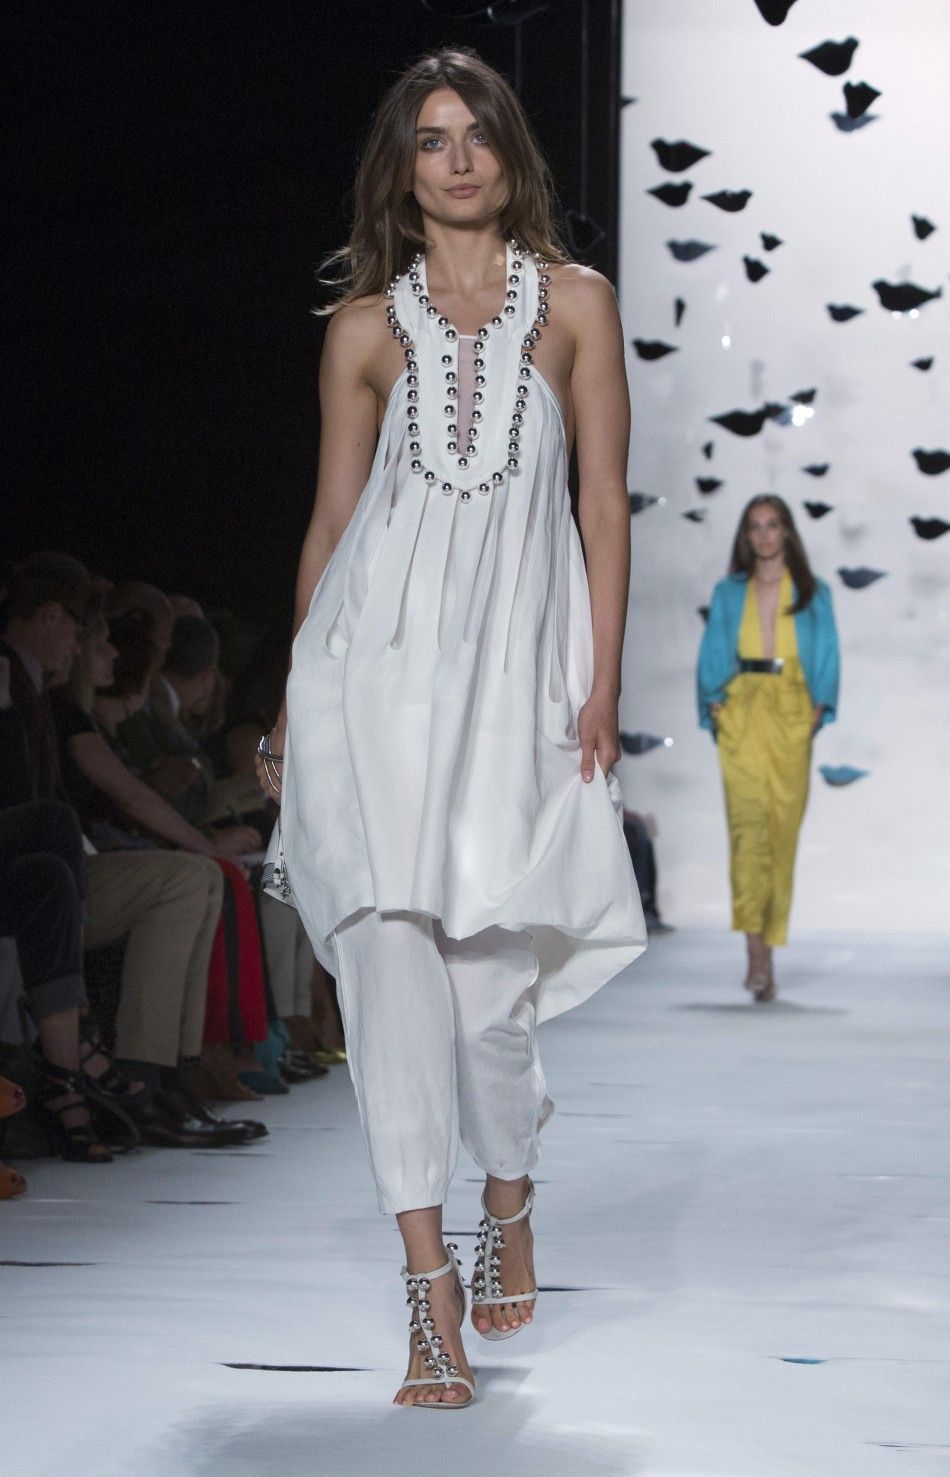 Diane von Furstenberg Spring 2013 collection at Mercedes-Benz Fashion Week in New York, Sept. 9, 2012